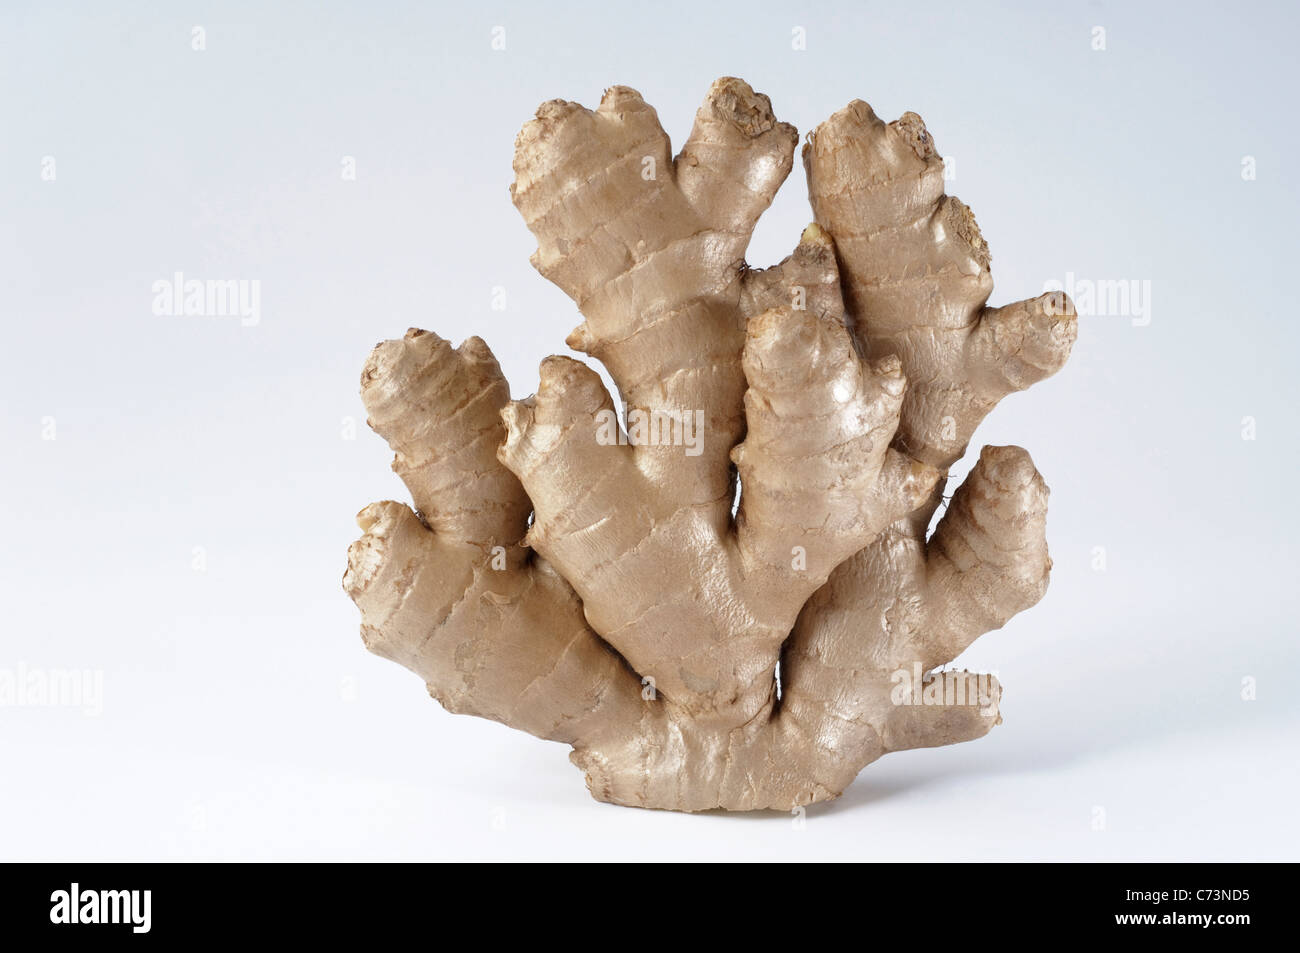 Le gingembre (Zingiber officinalis), de rhizome. Studio photo sur un fond blanc. Banque D'Images